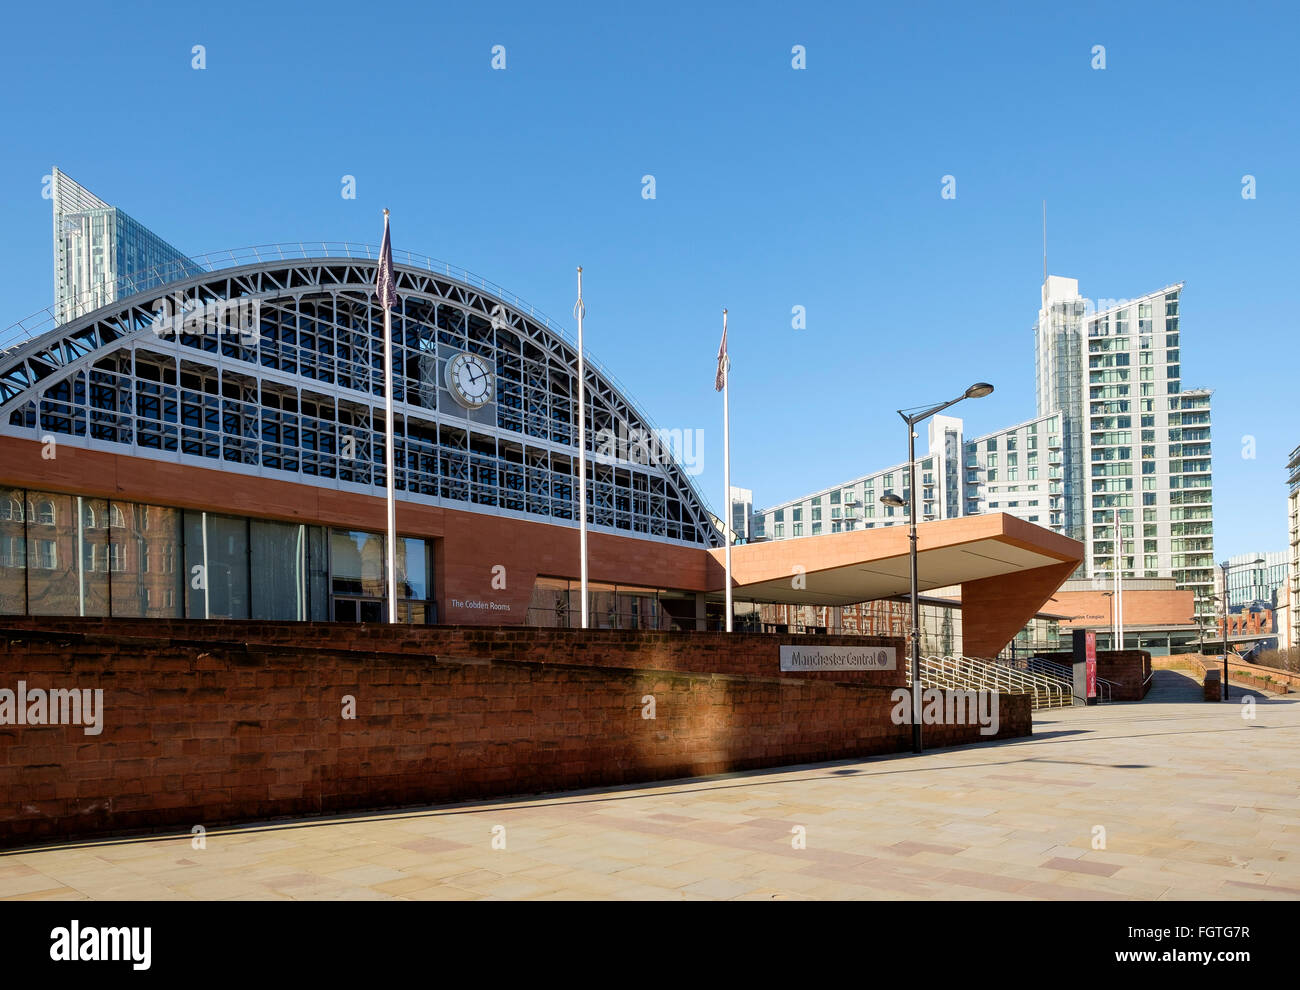 Manchester, Reino Unido - 15 de febrero de 2016: El Hall central de Manchester Central Complejo de Convenciones Foto de stock